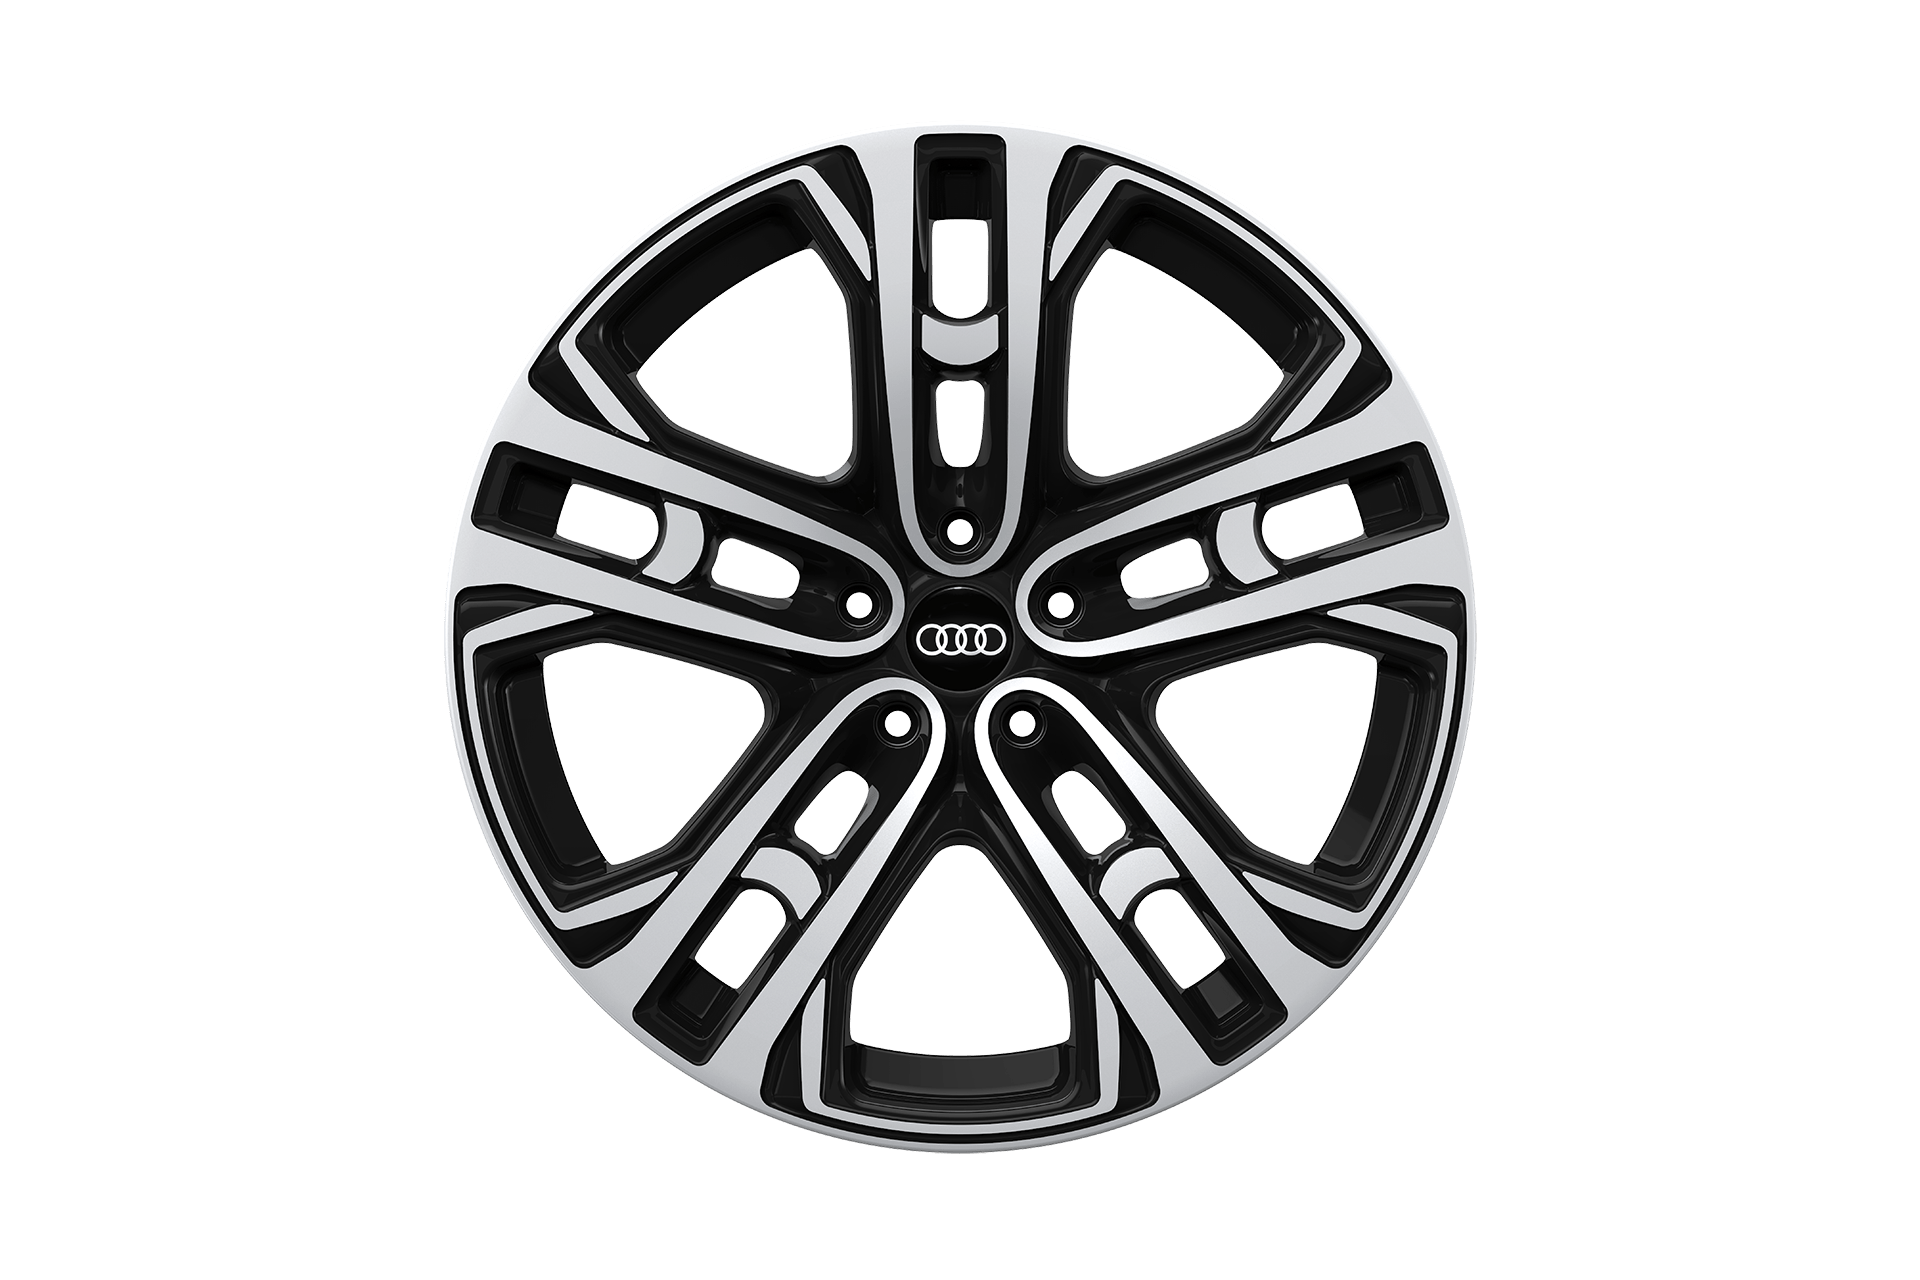 Audi Q7 (2016-Present) Le Mans Light Alloy Wheels Image 4732